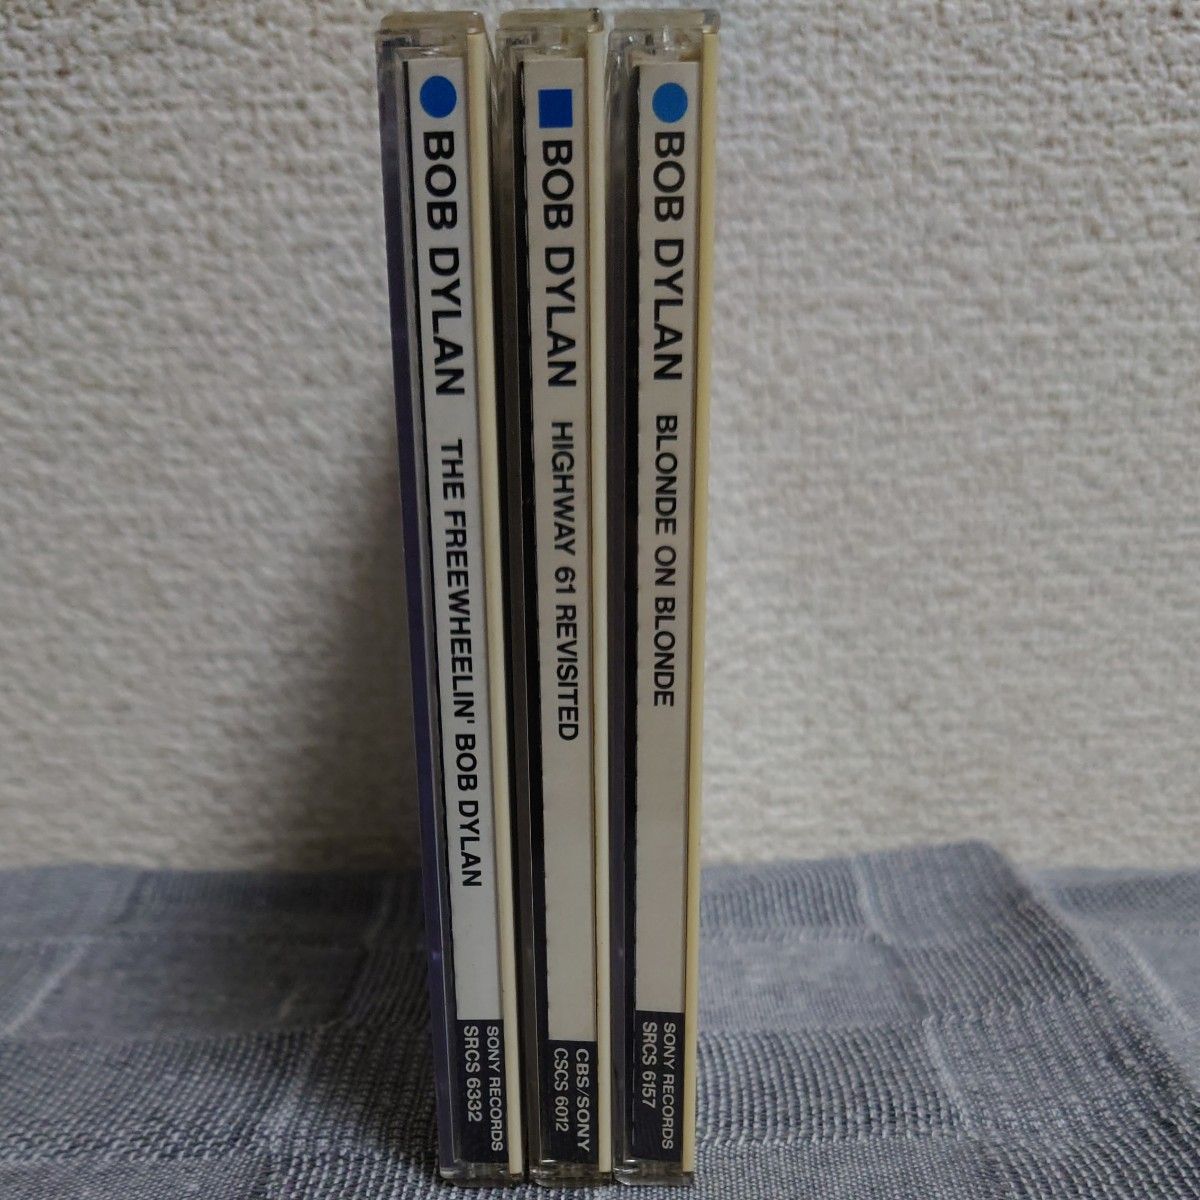 ボブ・ディラン CDアルバム 3枚セット